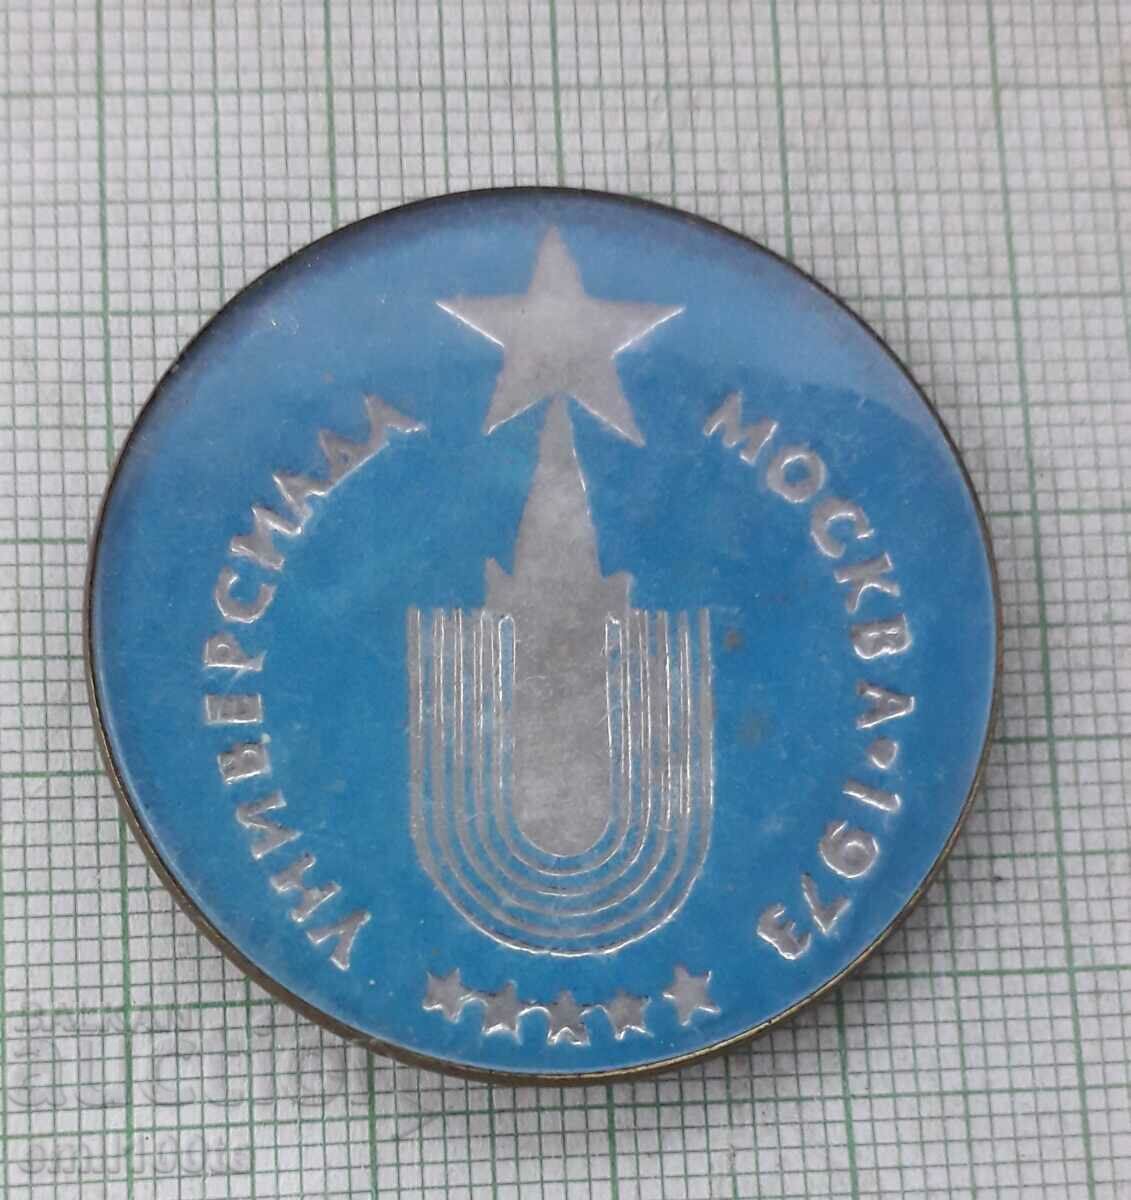 Σήμα - Πανεπιστημιακή Μόσχα 1973